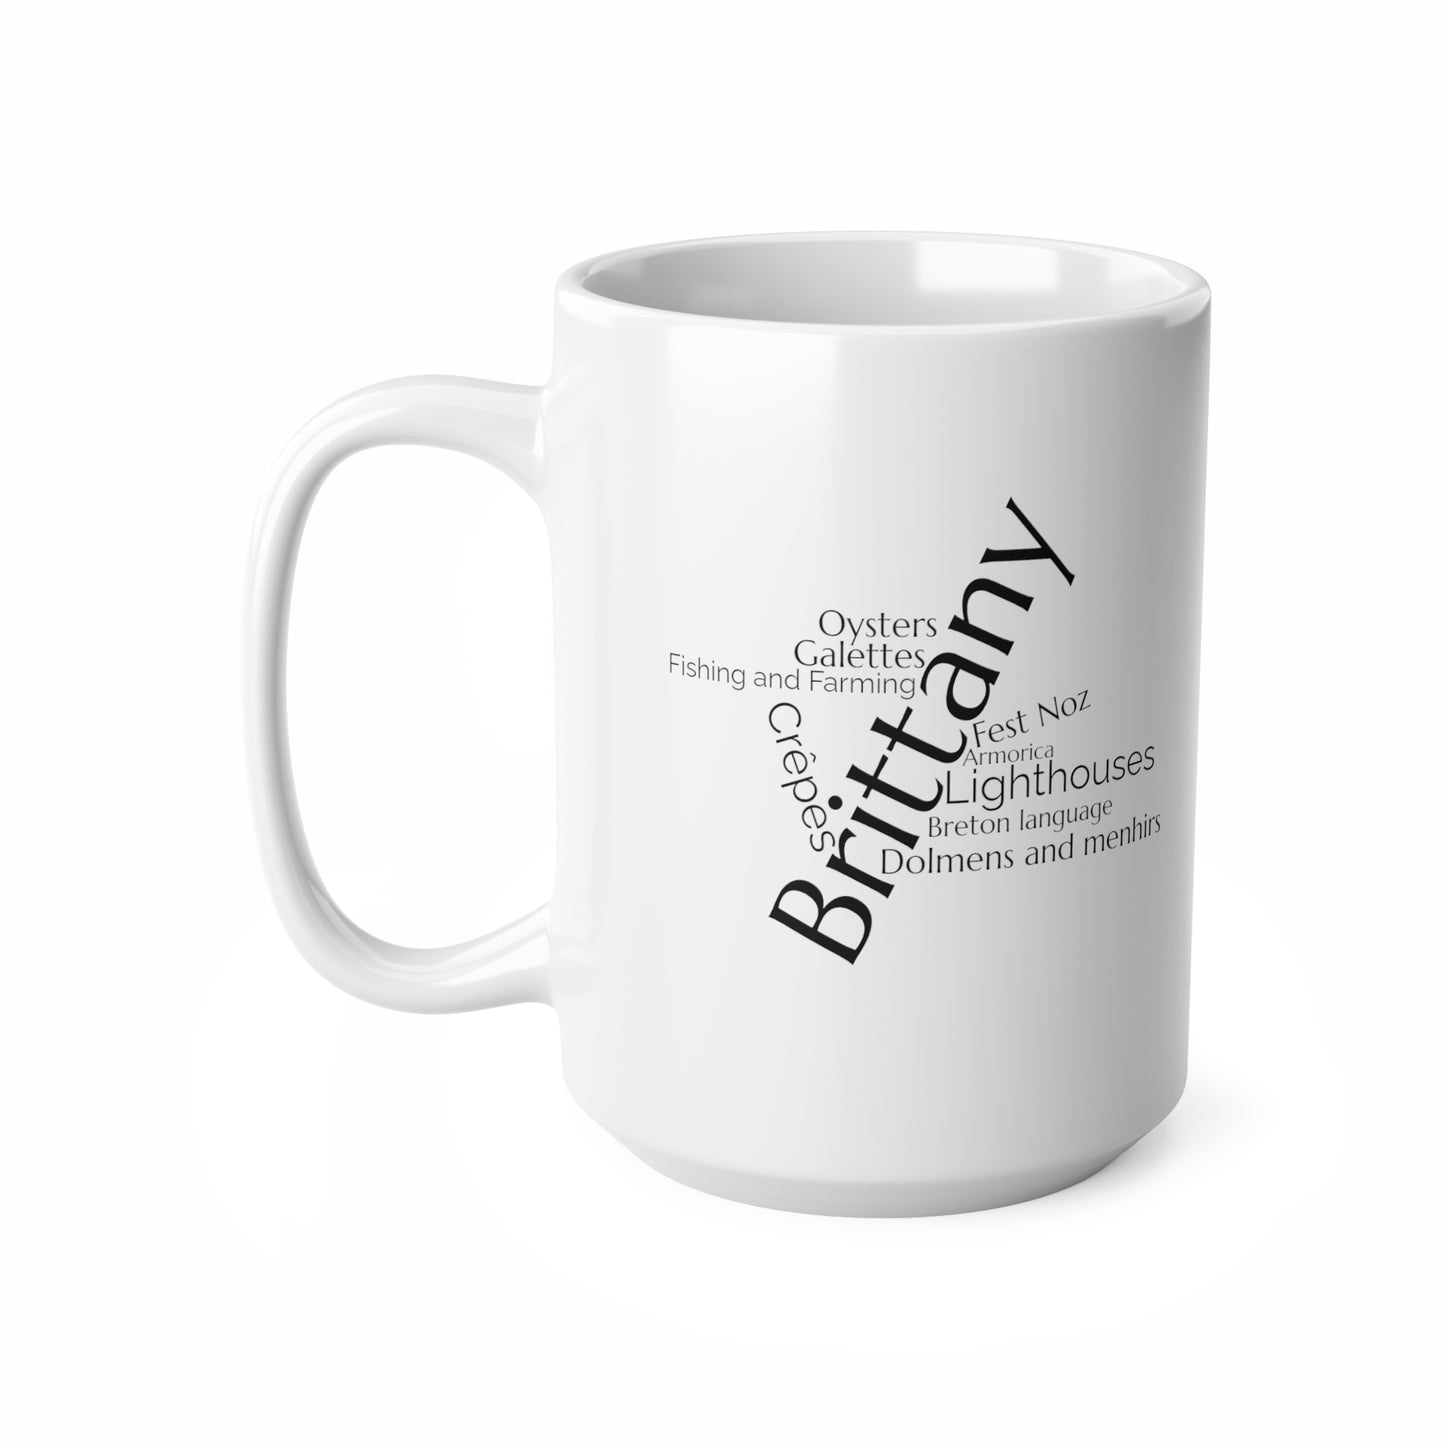 Brittany word mug, local mug, geography mug, gift, mug, coffee cup, word mug, wordcloud mug, christmas gift, birthday gift